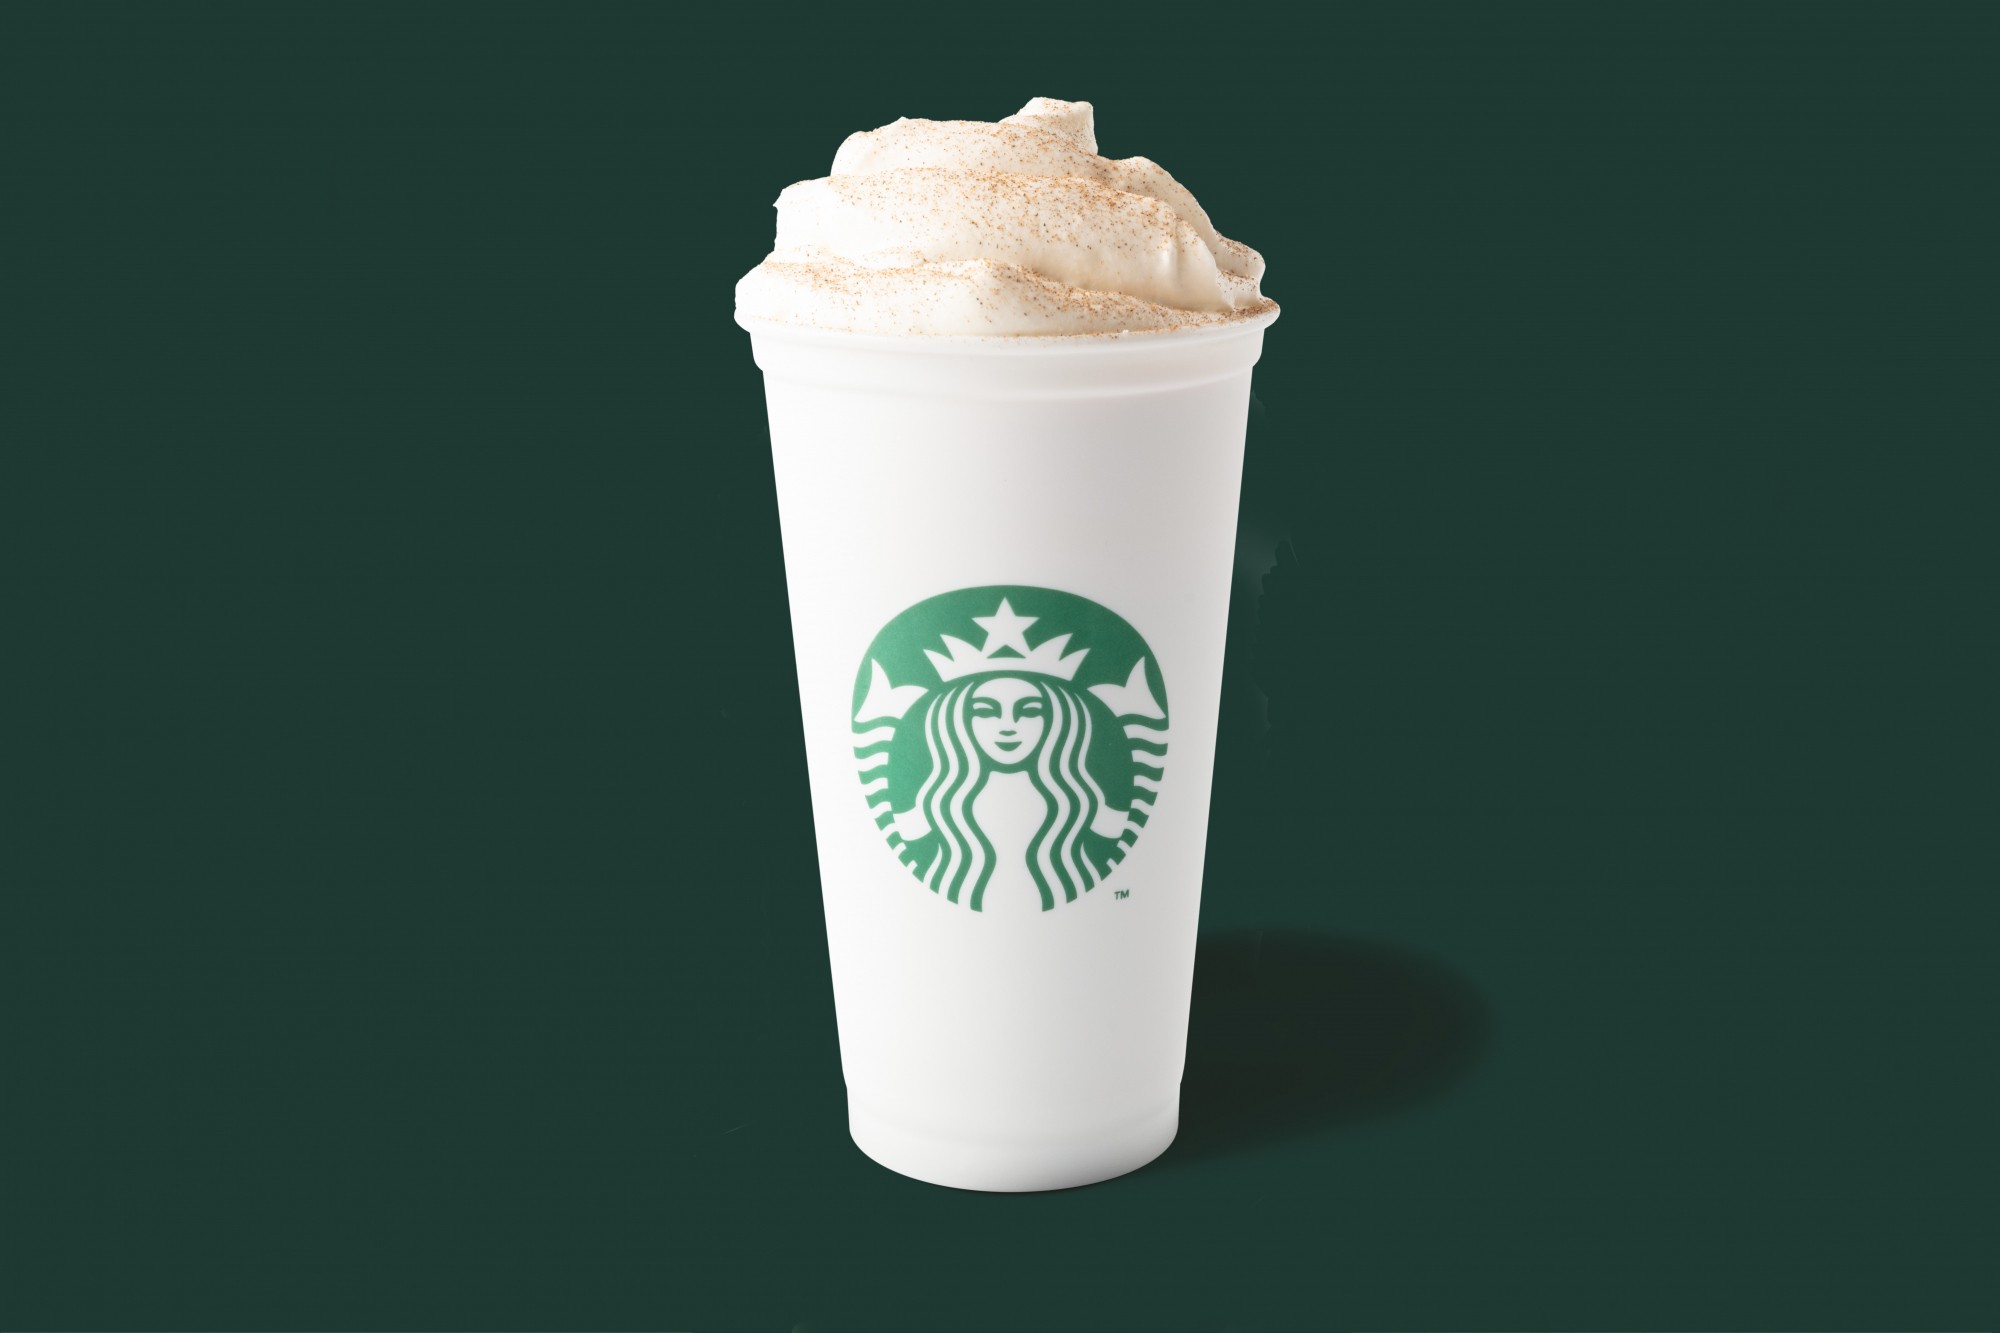 Ζήστε την εποχή του Pumpkin Spice Latte  αποκλειστικά στα Starbucks!